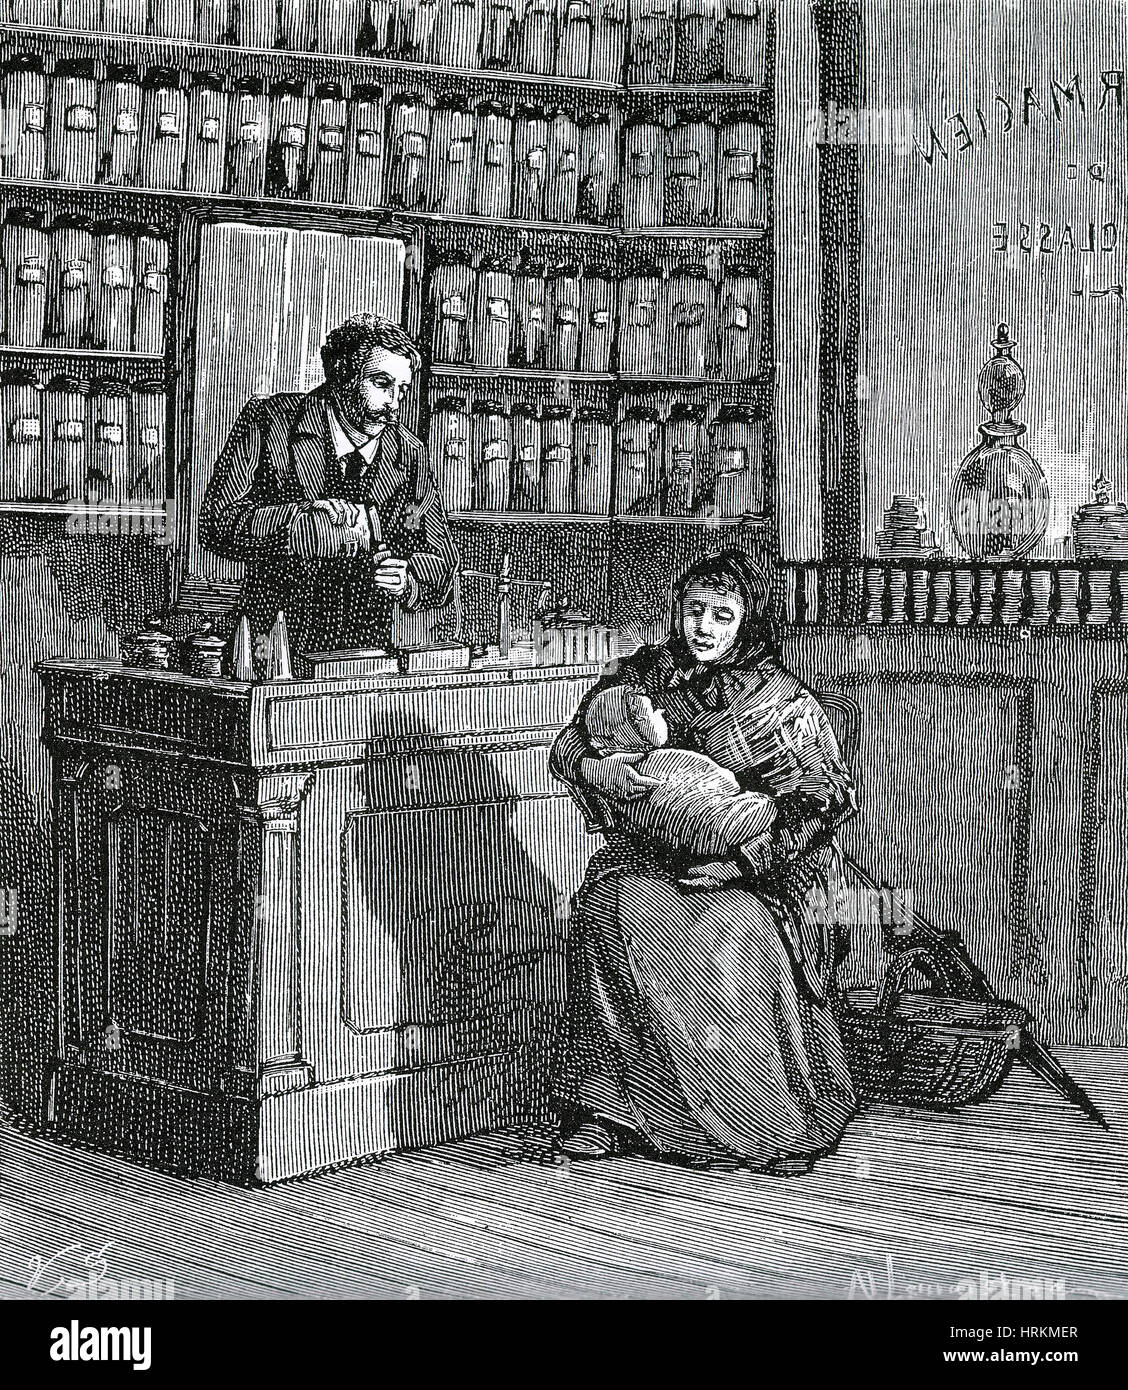 Farmacia histórico Foto de stock